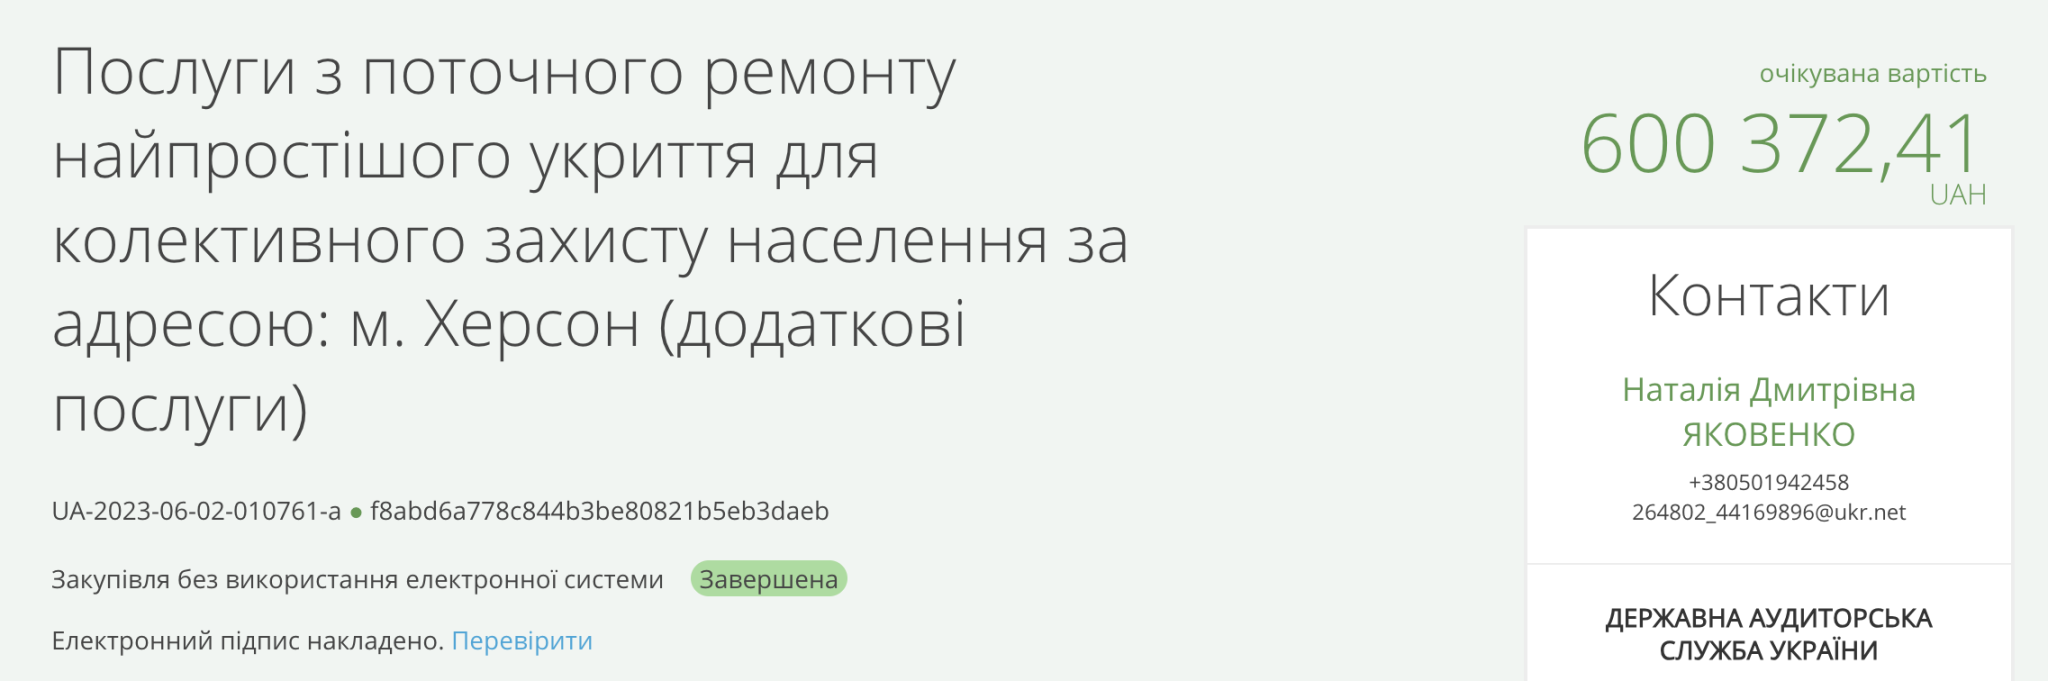 Труха телеграмм украина на русском языке смотреть фото 113